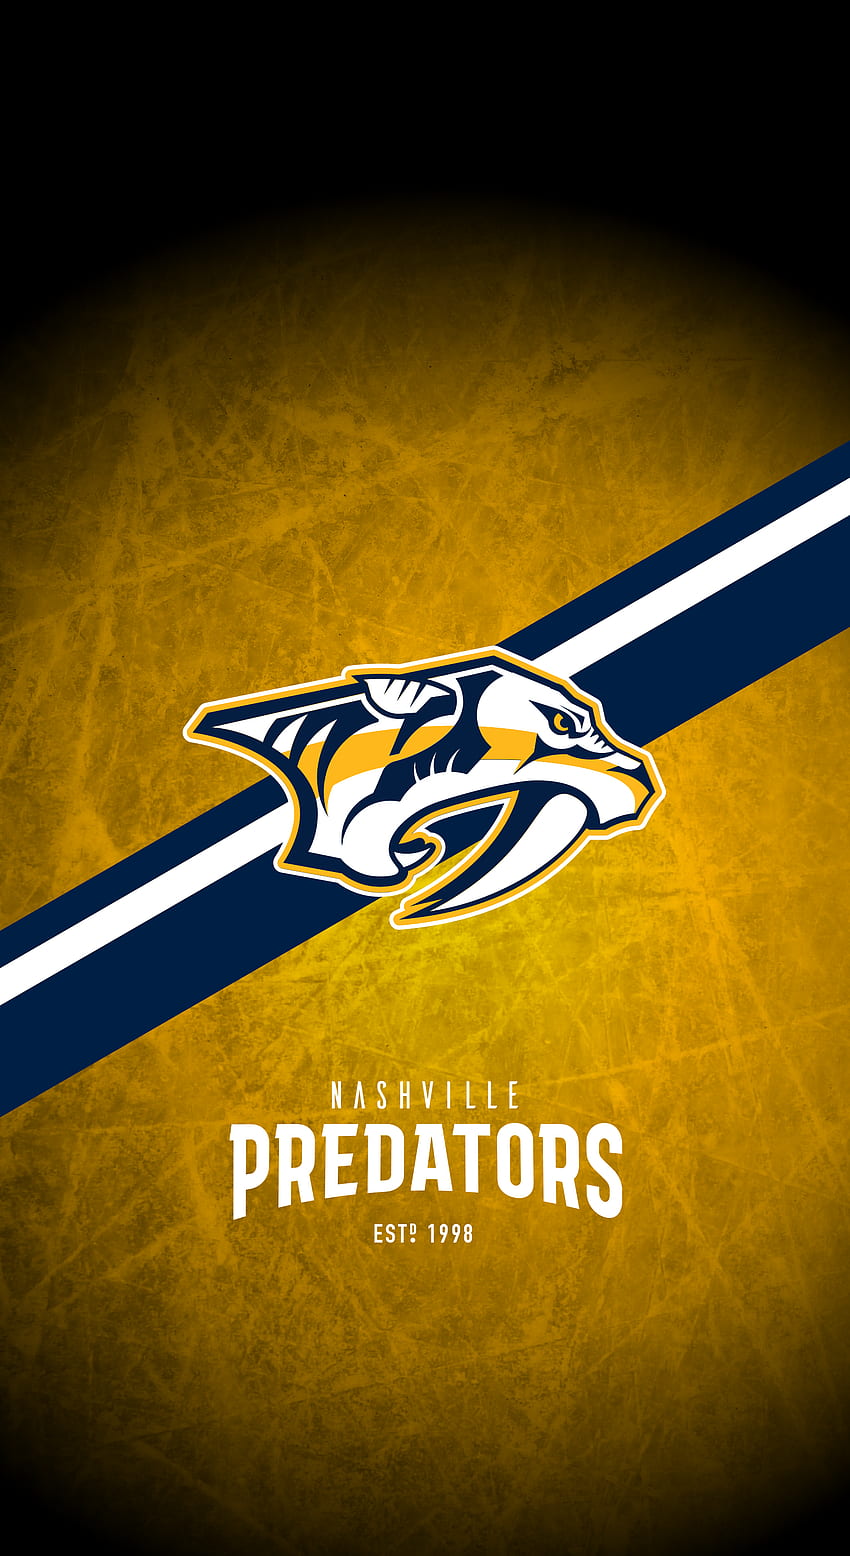 New Jersey Devils (NHL) iPhone X/XS/XR Lock Screen Wallpaper